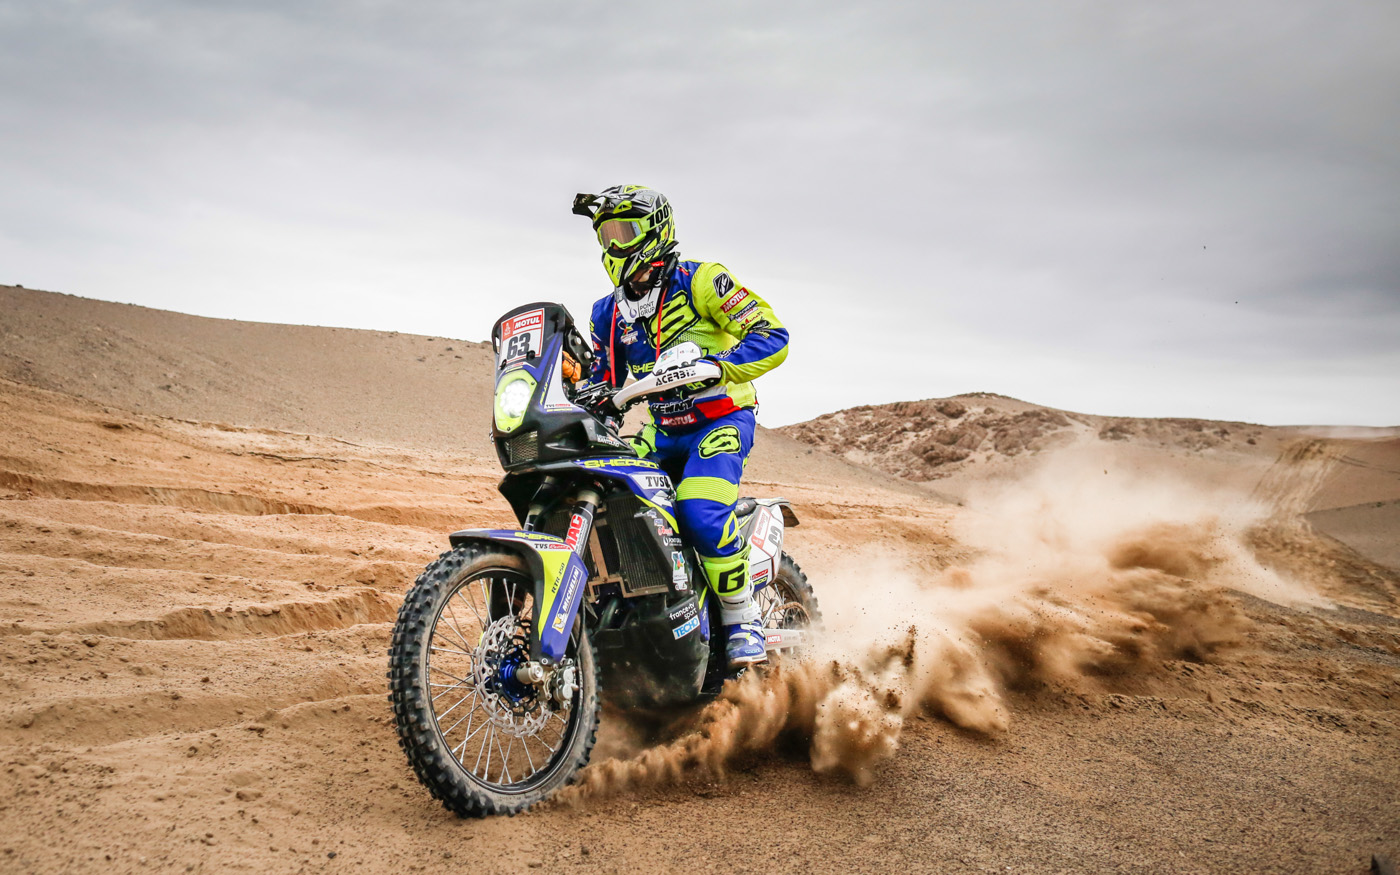 Stage 3 der Rallye Dakar 2019 von San Juan de Marcona nach Arequipa